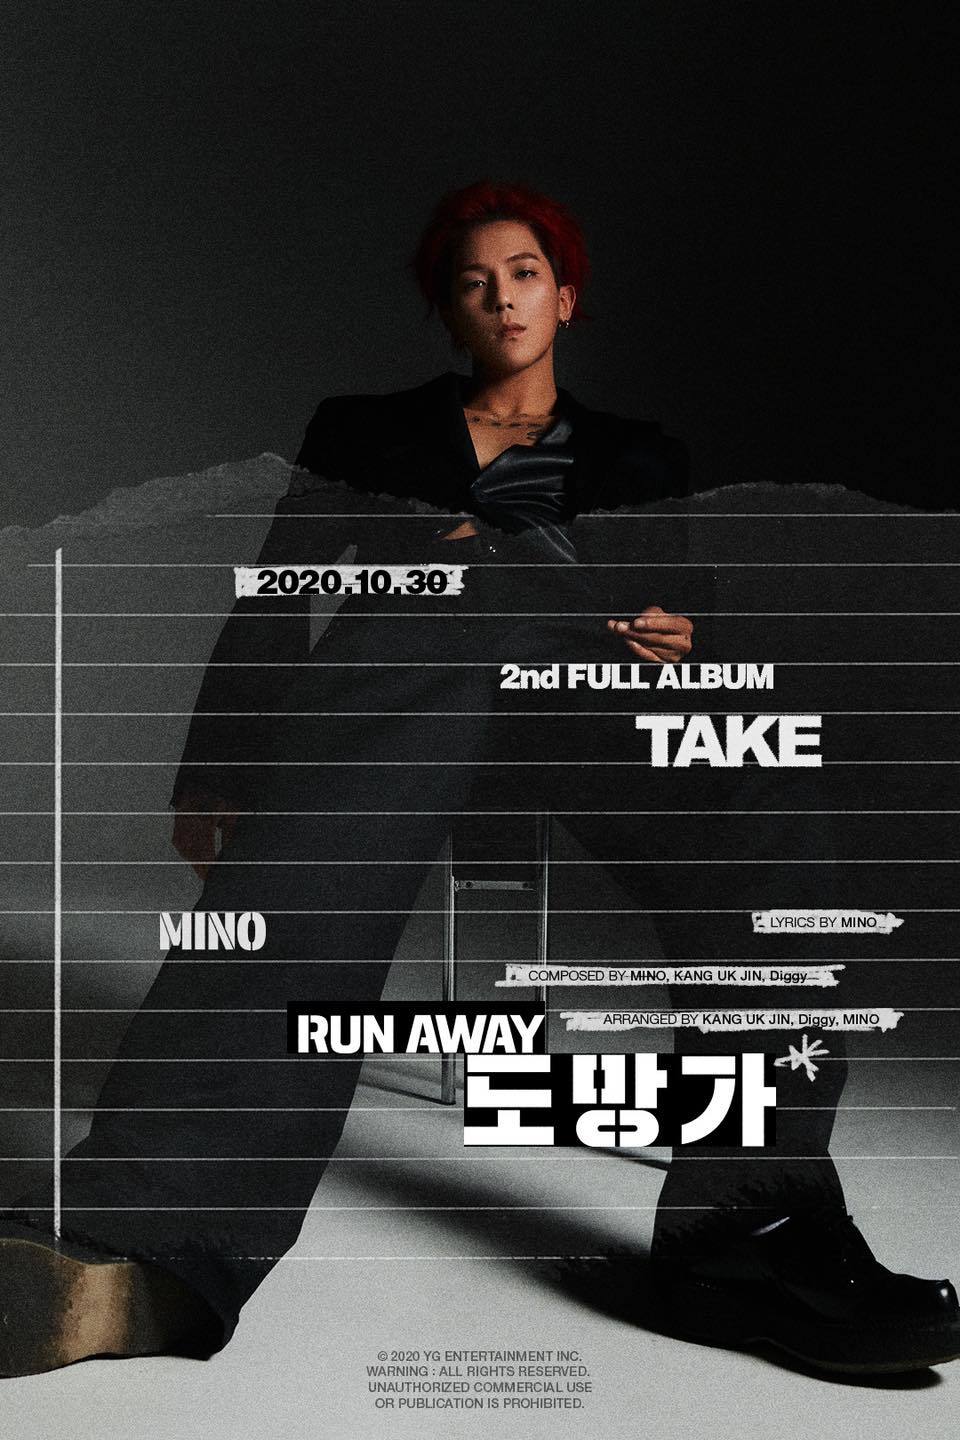  
Bài hát chủ đề của Mino sẽ là Run Away. (Ảnh: Instagram)